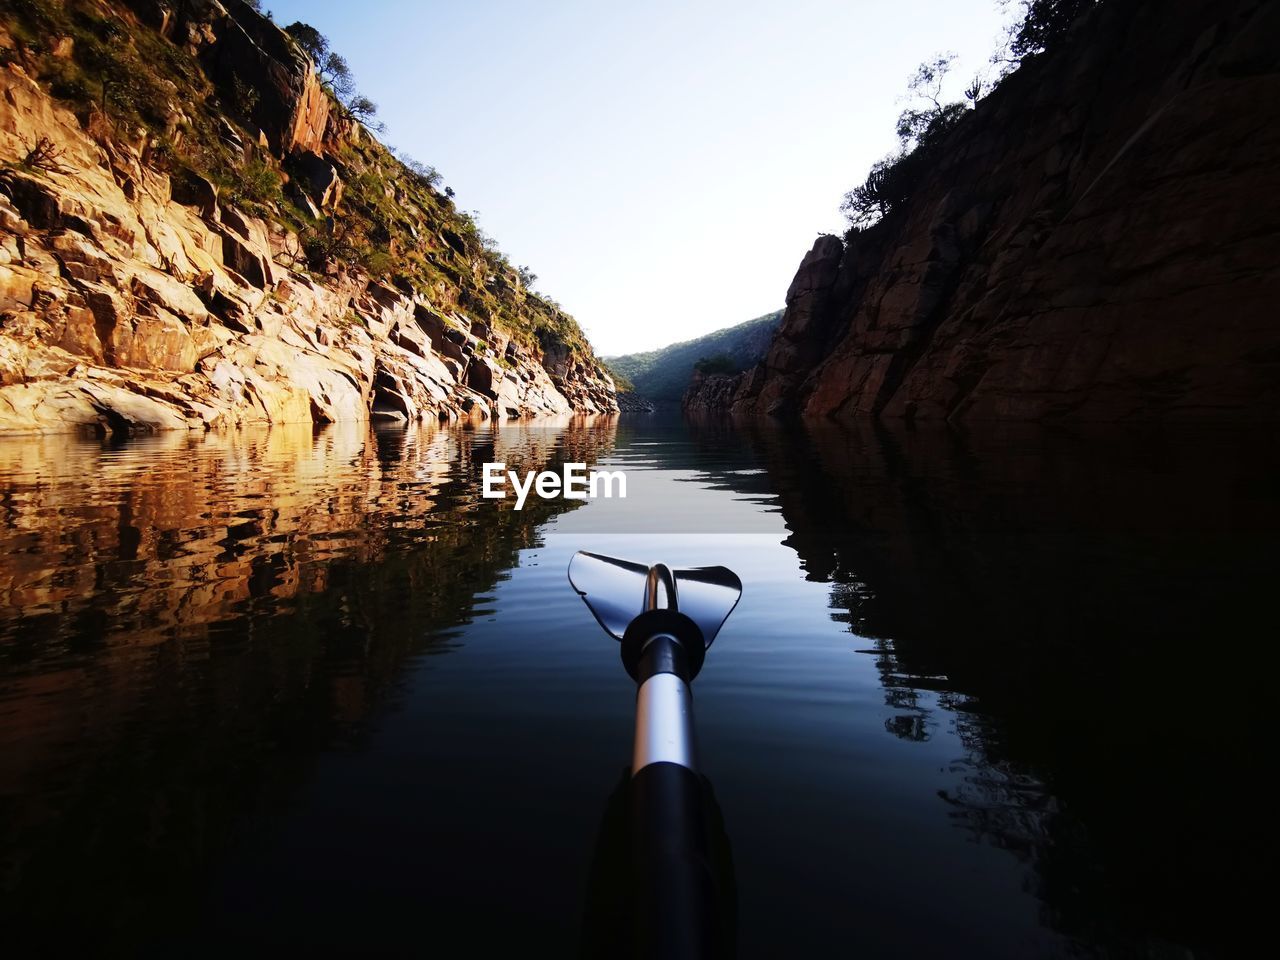 Kayaking at bivane dam early morning 